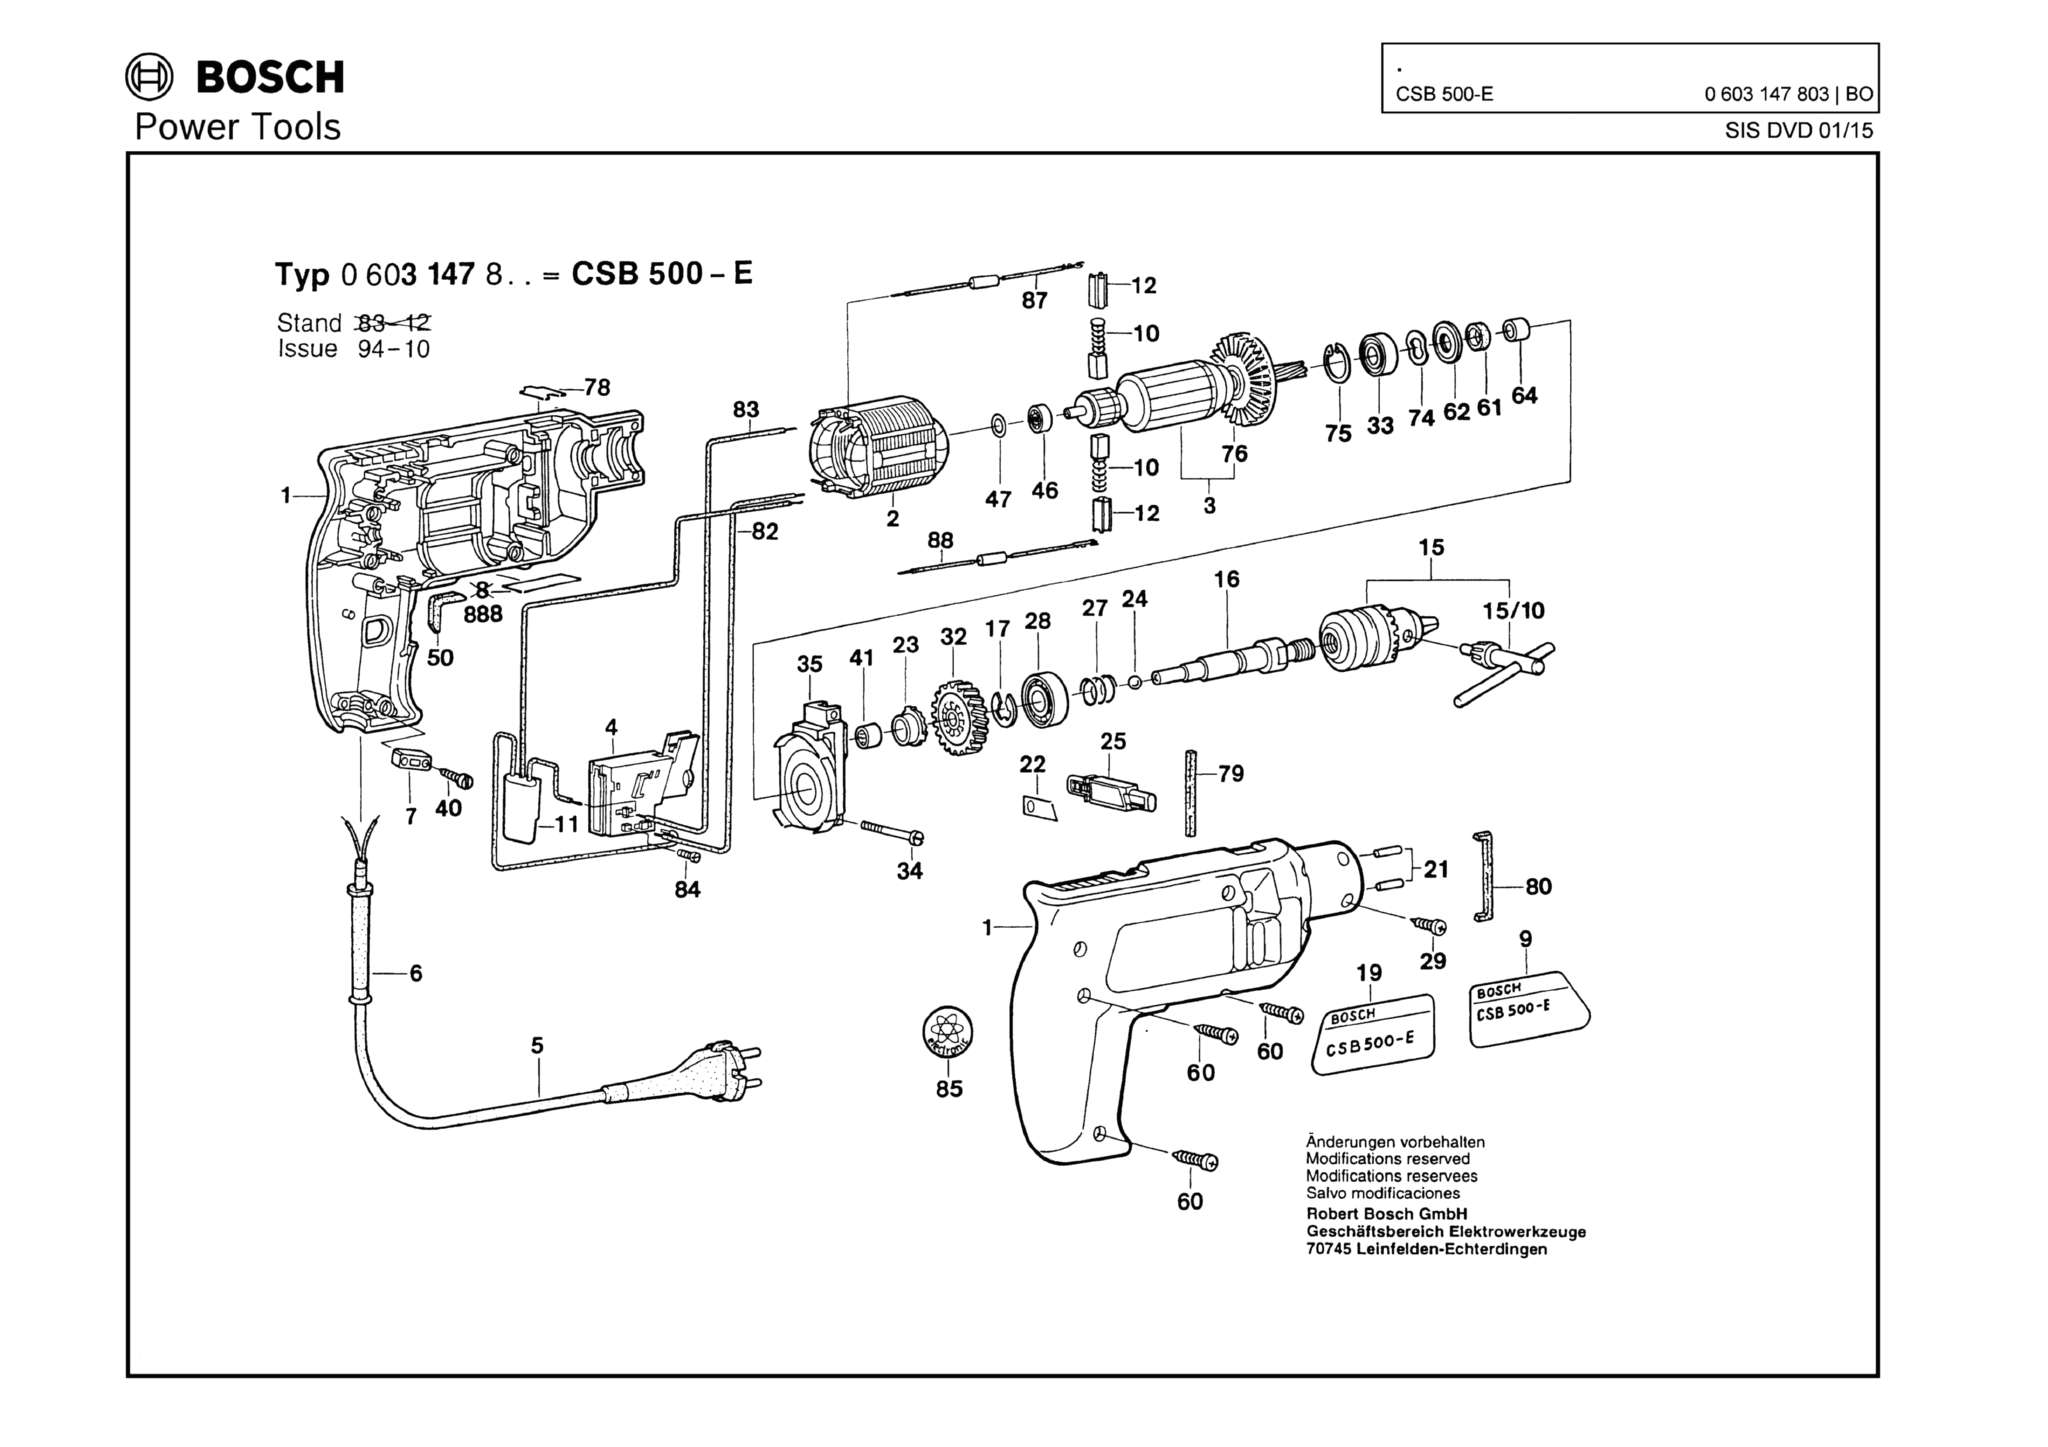 Запчасти, схема и деталировка Bosch CSB 500-E (ТИП 0603147803)